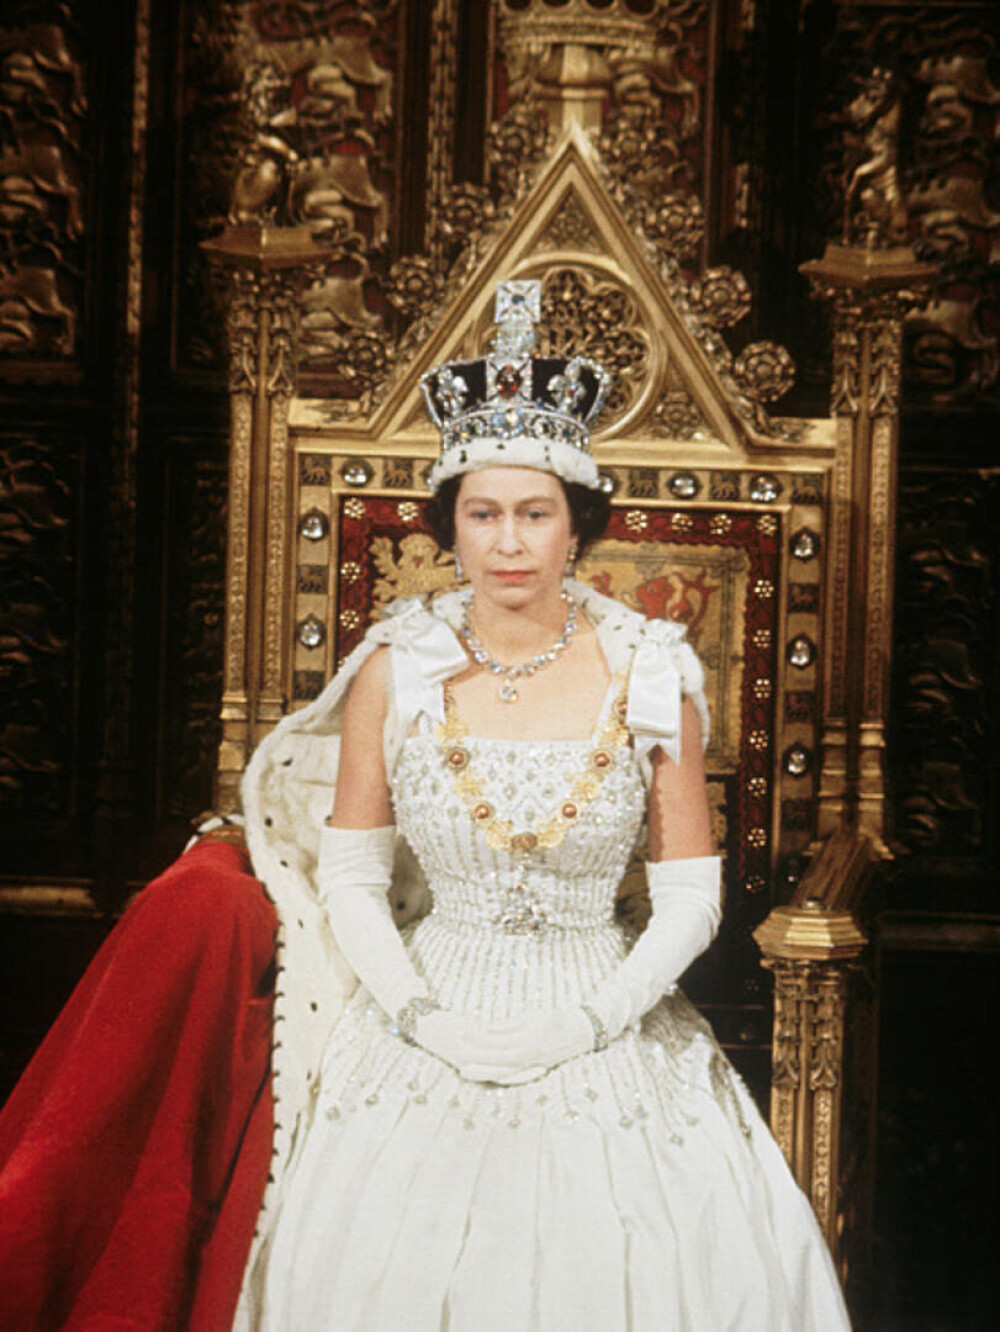 Imaginile istorice cu Regina Elisabeta a II-a. La vârsta de 10 ani a devenit moștenitoarea tronului britanic - Imaginea 27